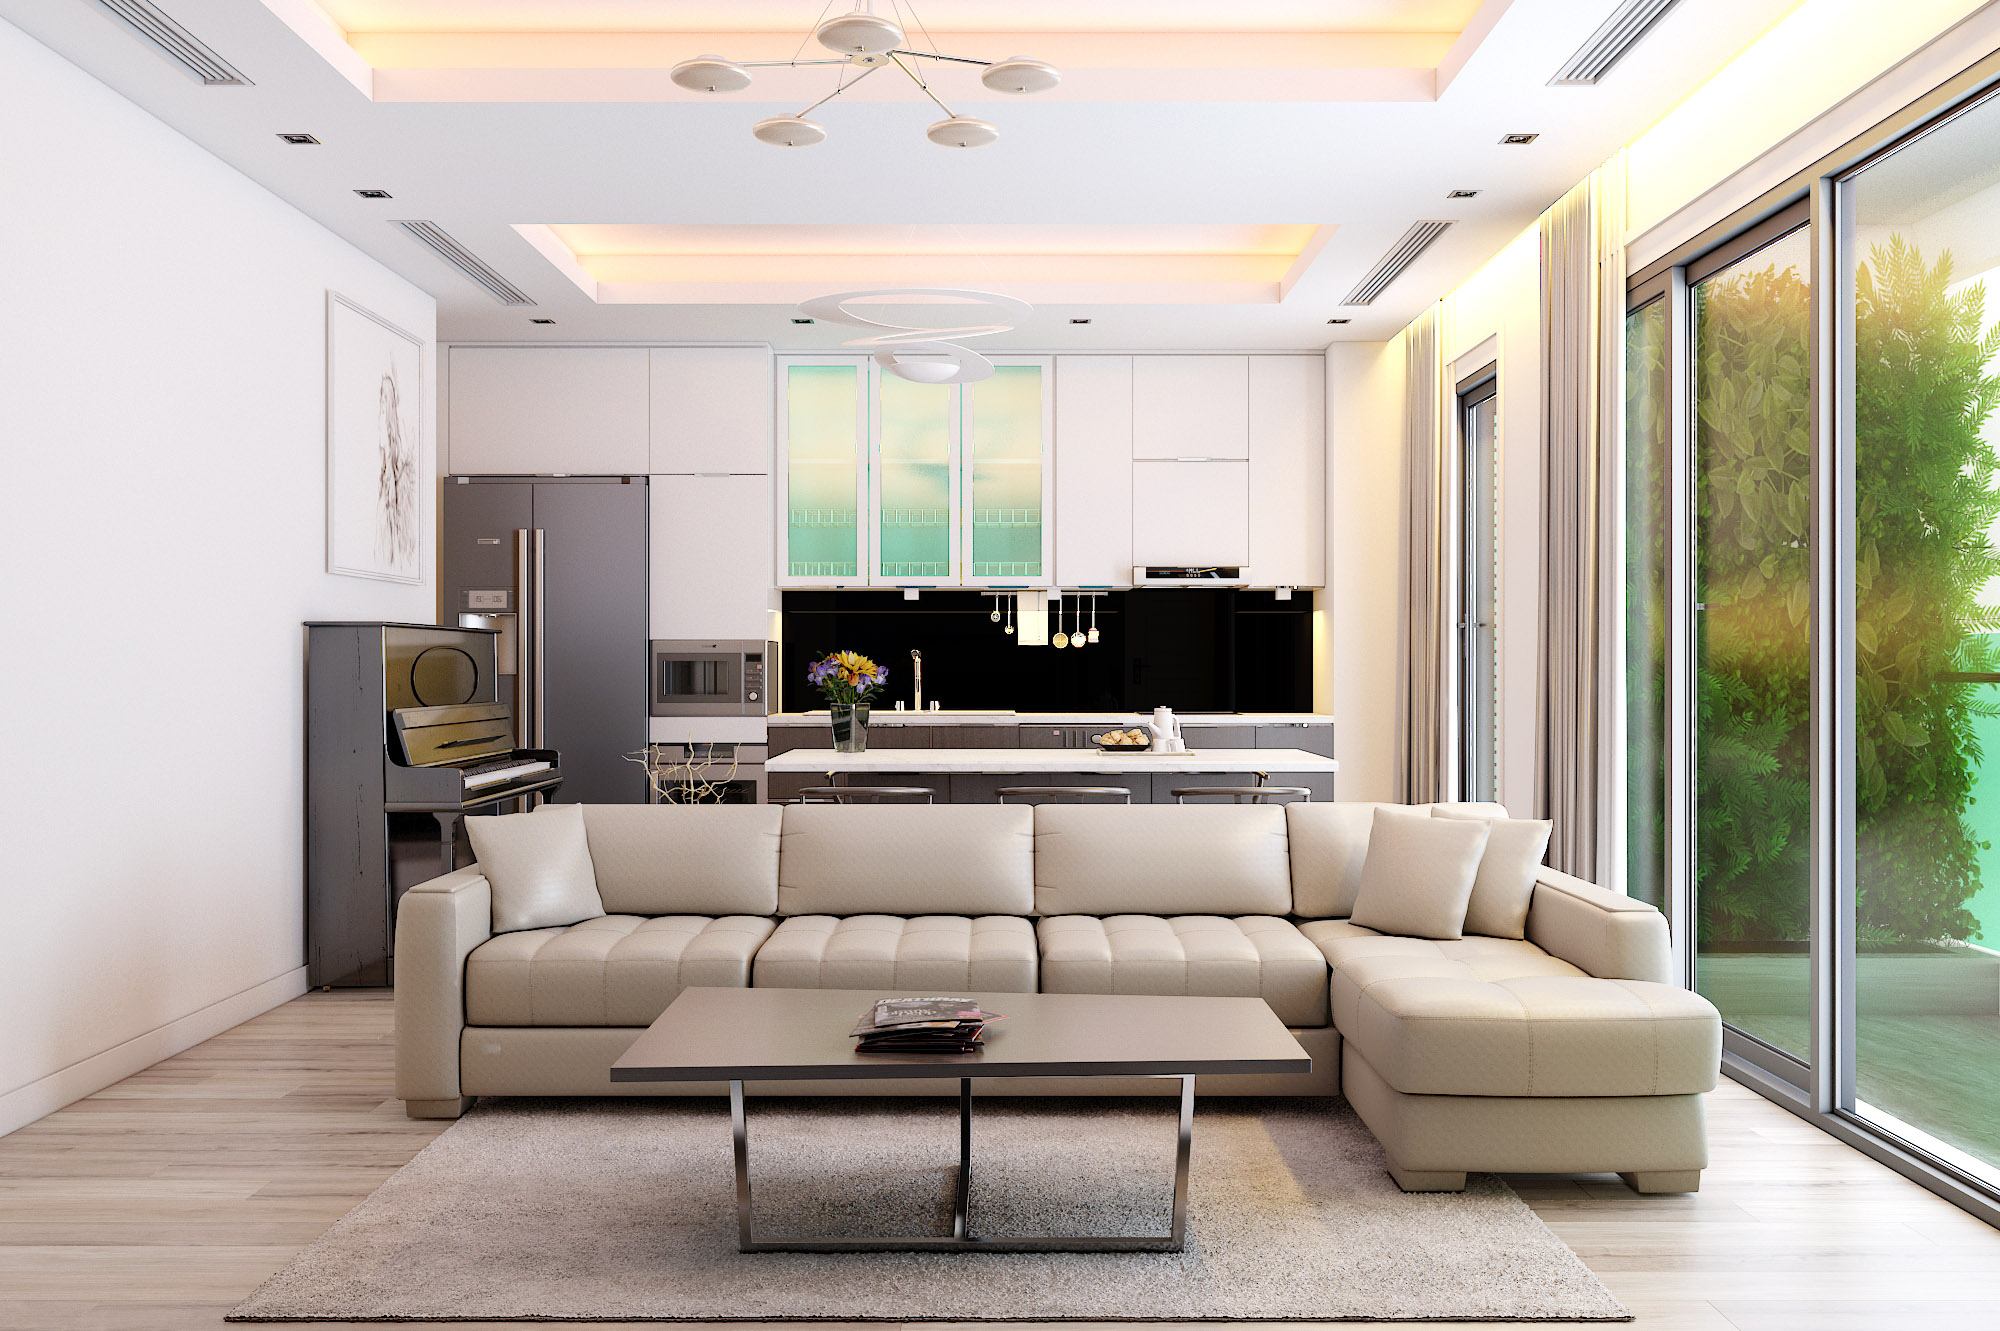 Giới thiệu mẫu nội thất chung cư 40m2 phong cách hiện đại